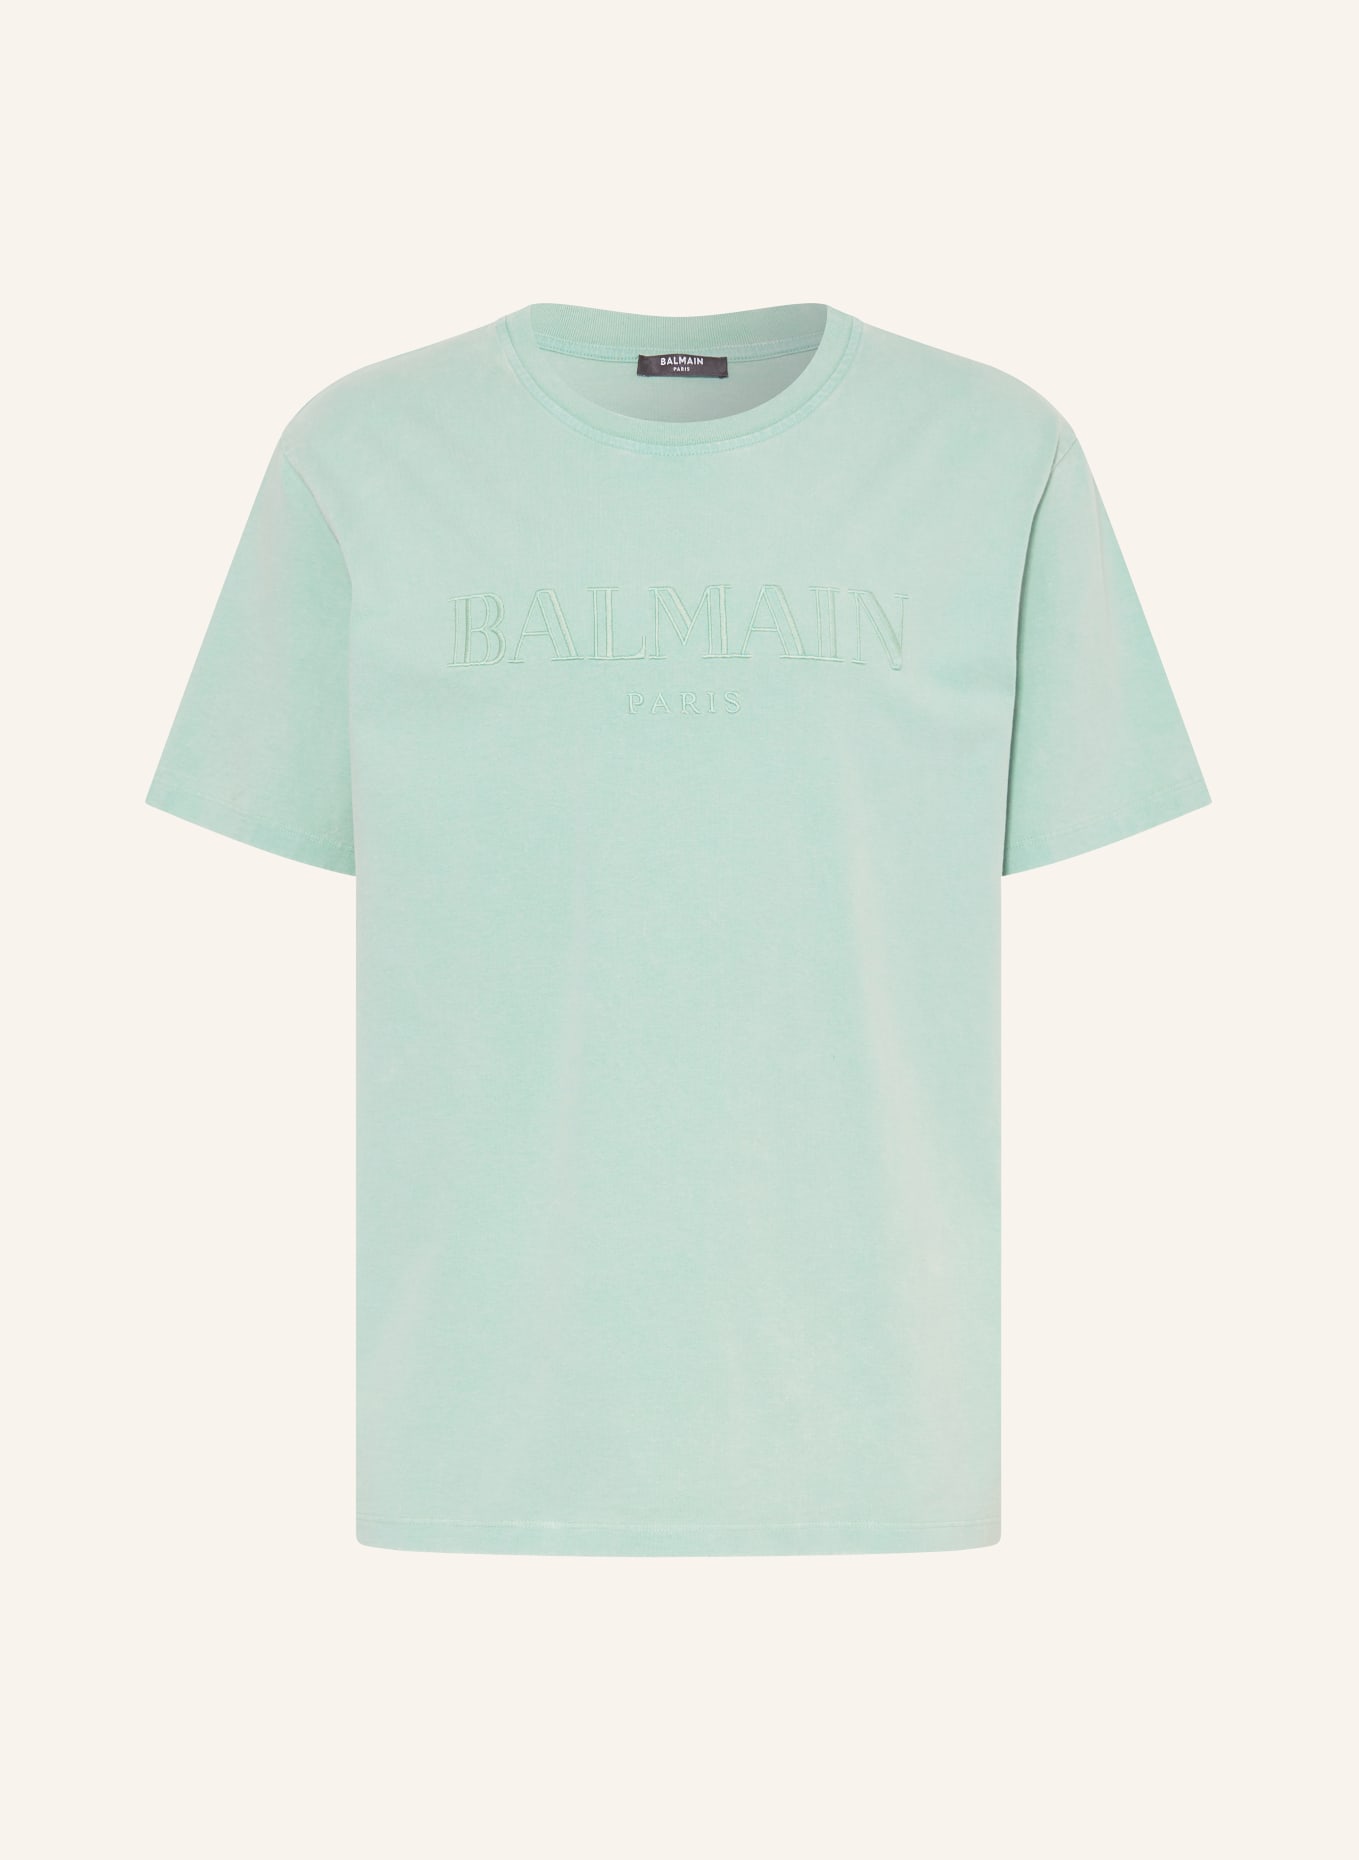 BALMAIN T-shirt, Color: MINT (Image 1)